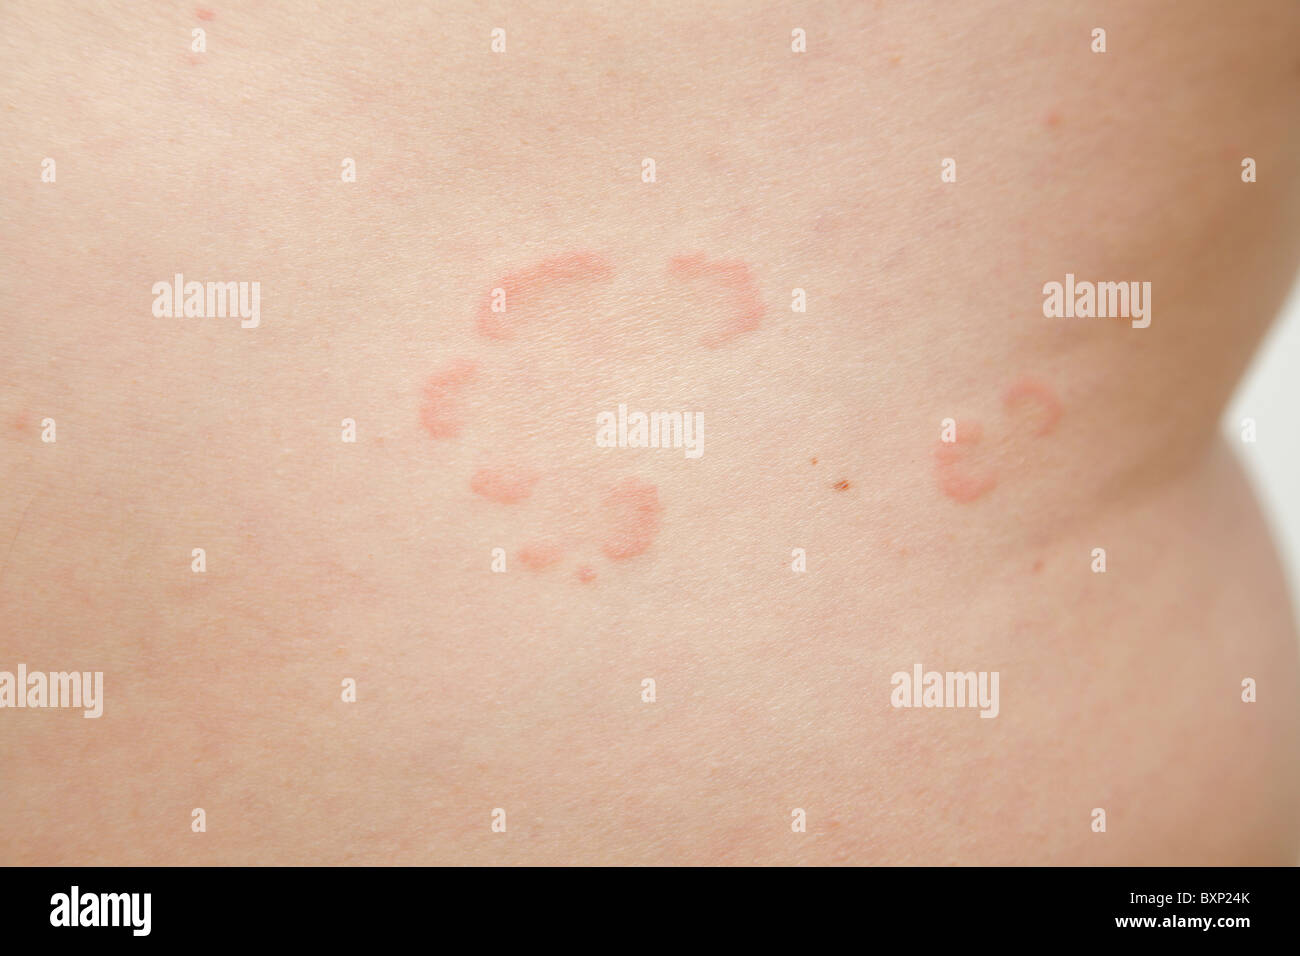 Psoriasis doux sur la peau sur le côté de l'abdomen Banque D'Images